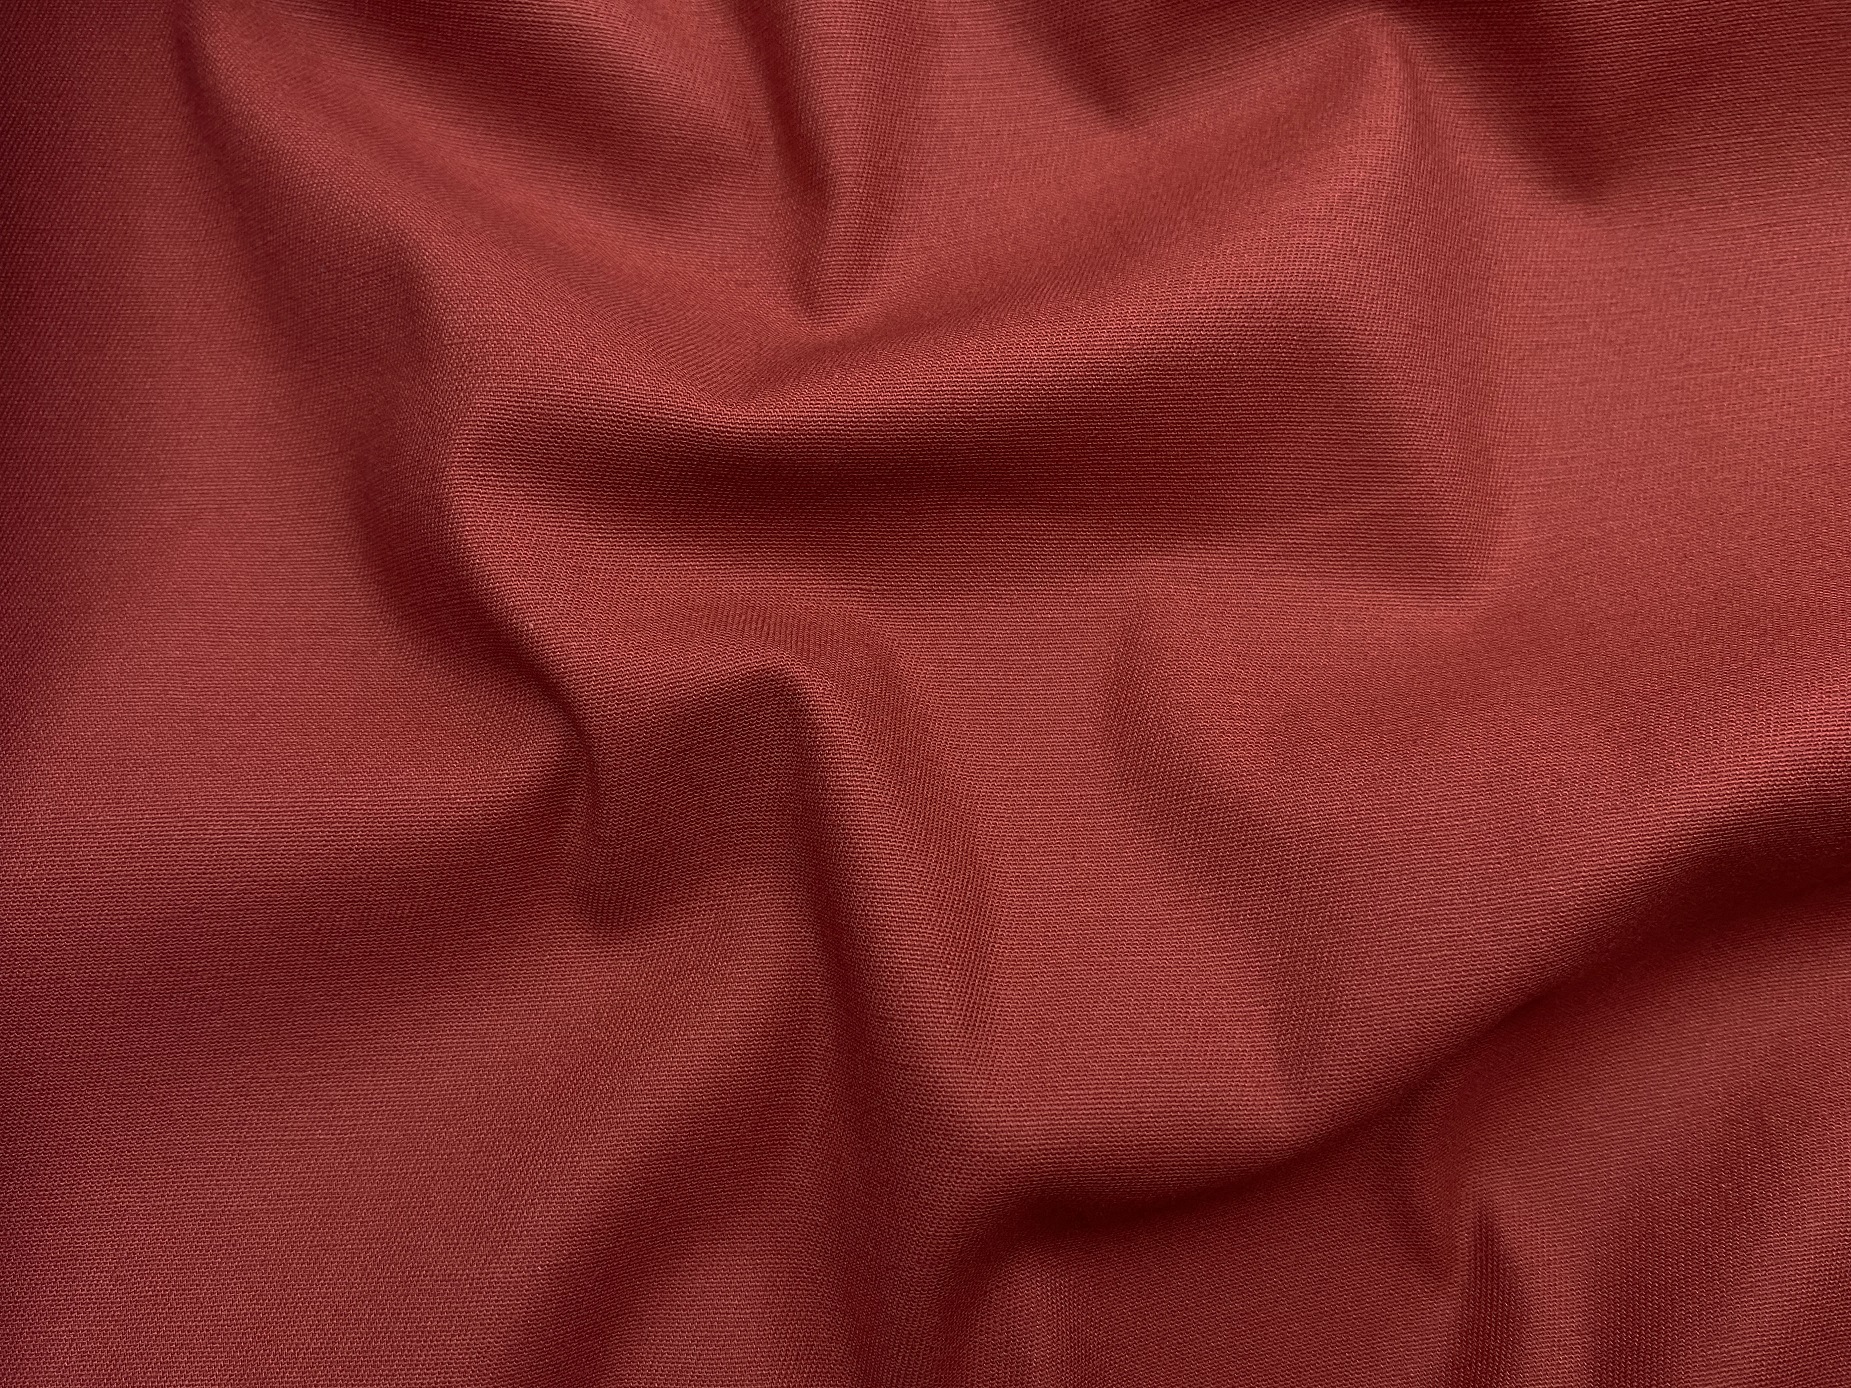 Ткань Хлопок  терракотового цвета однотонная 16847 2